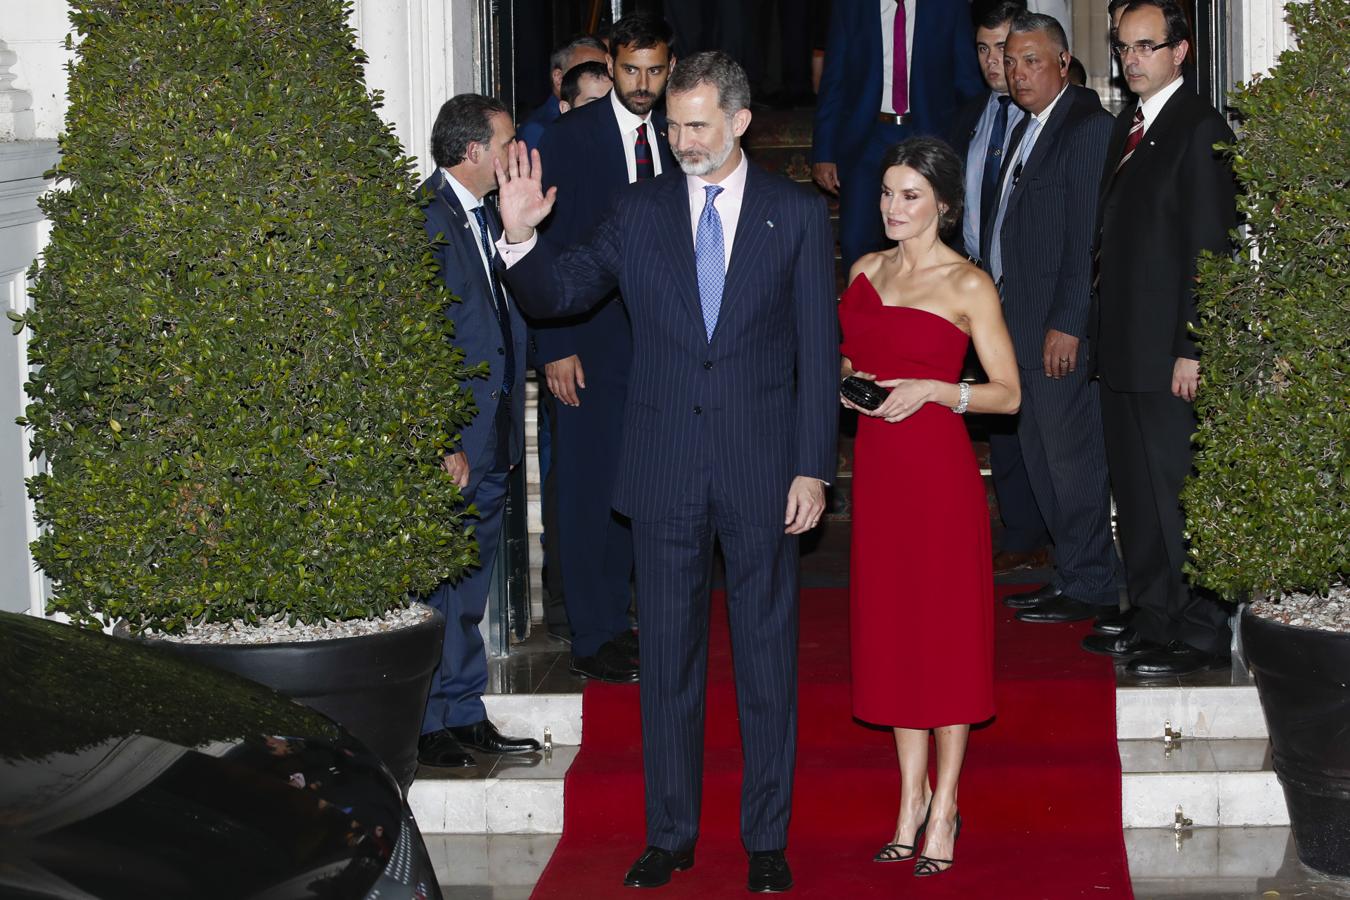 Recepción. Los Reyes ofrecieron una recepción en honor a los Macri.